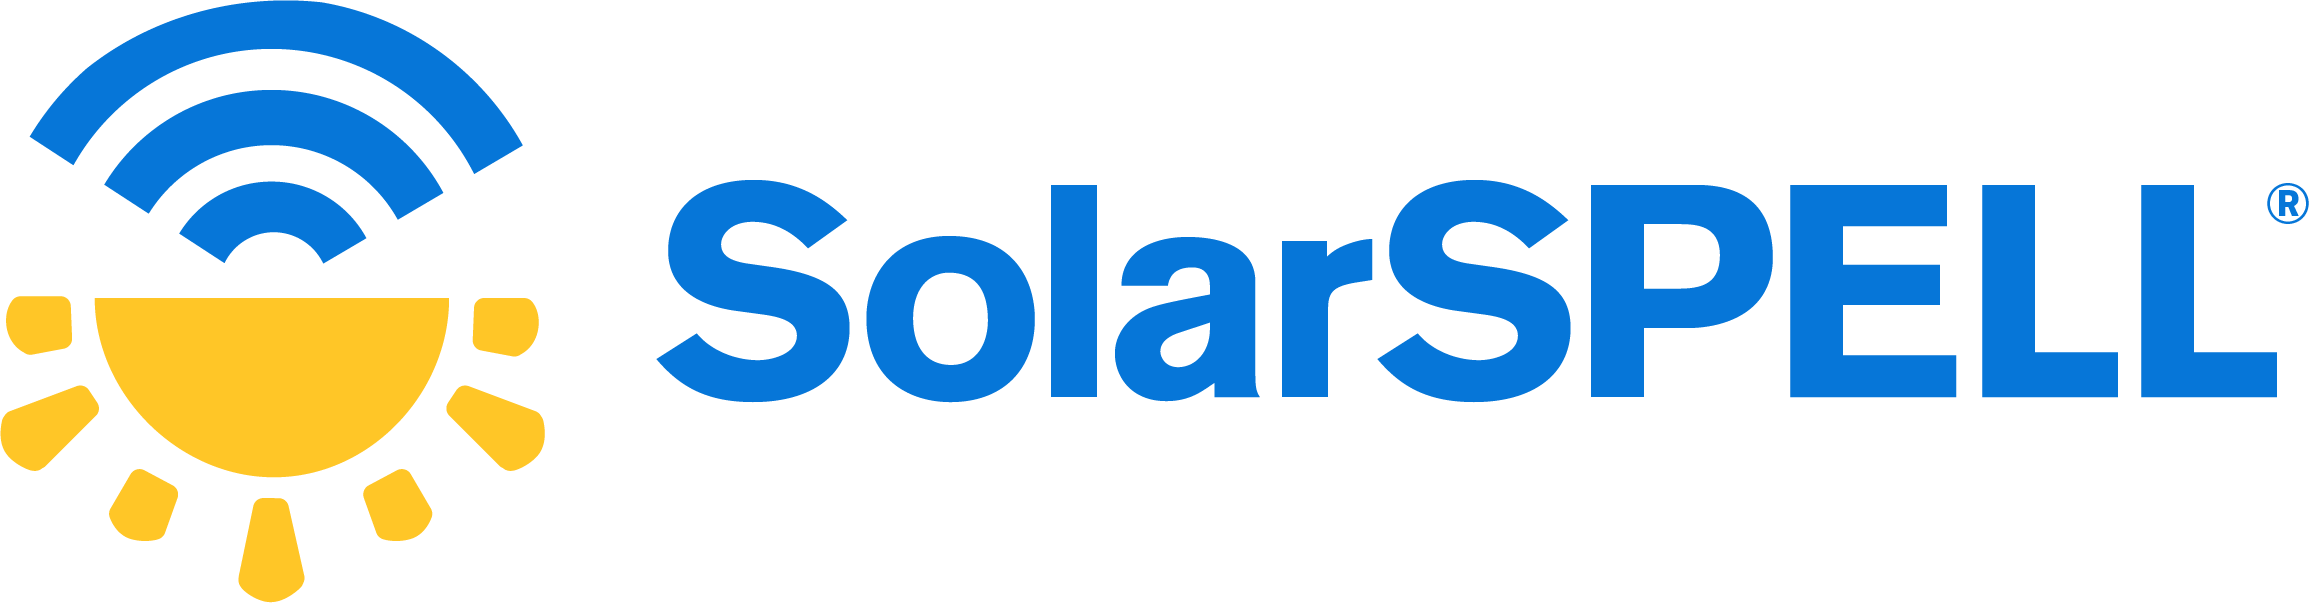 SolarSPELL Logo